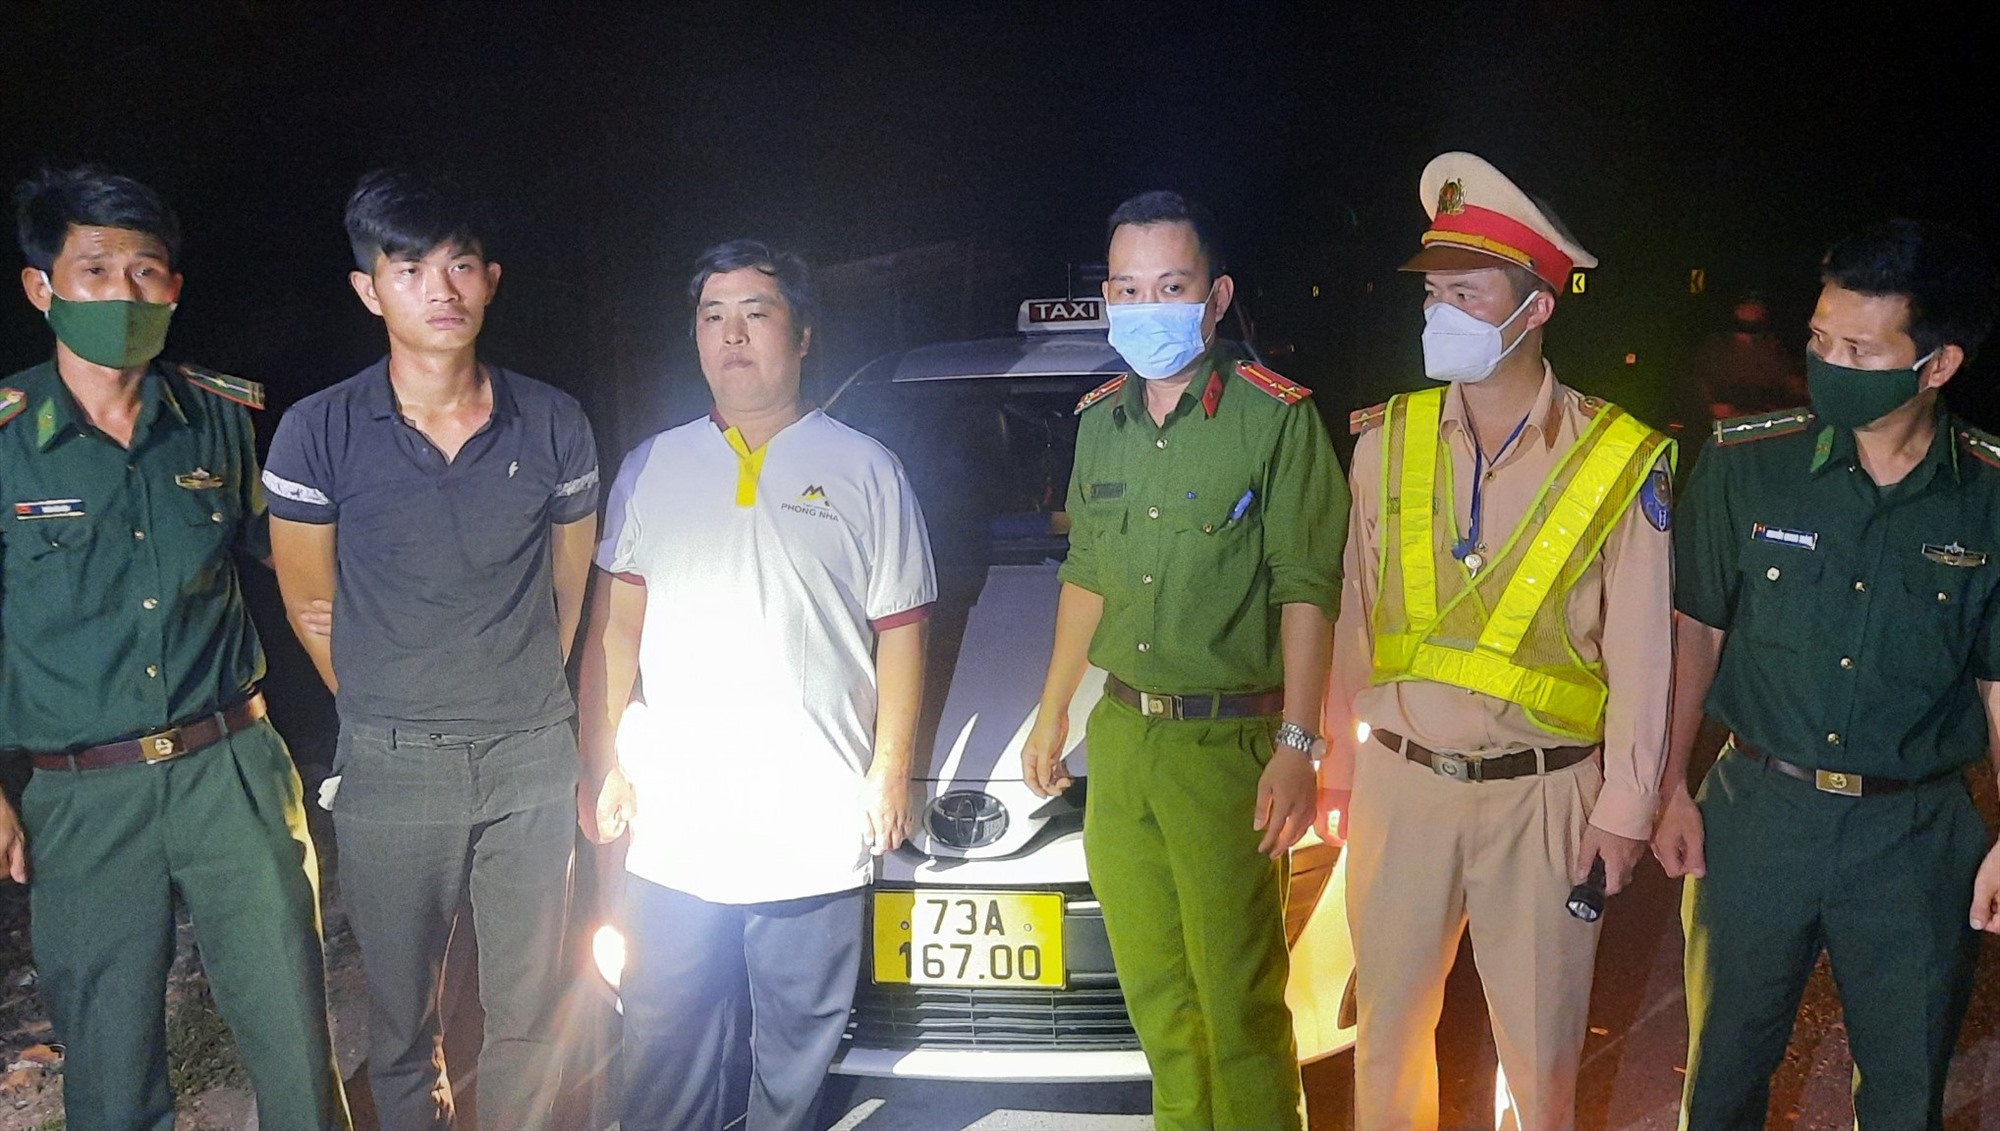 Đặng Quang Huy (thứ 2 từ trái sang) và tài xế Nguyễn Mạnh Hà (thứ 3 từ trái sang) bị các lực lượng bắt giữ – Ảnh: Mạnh Hùng